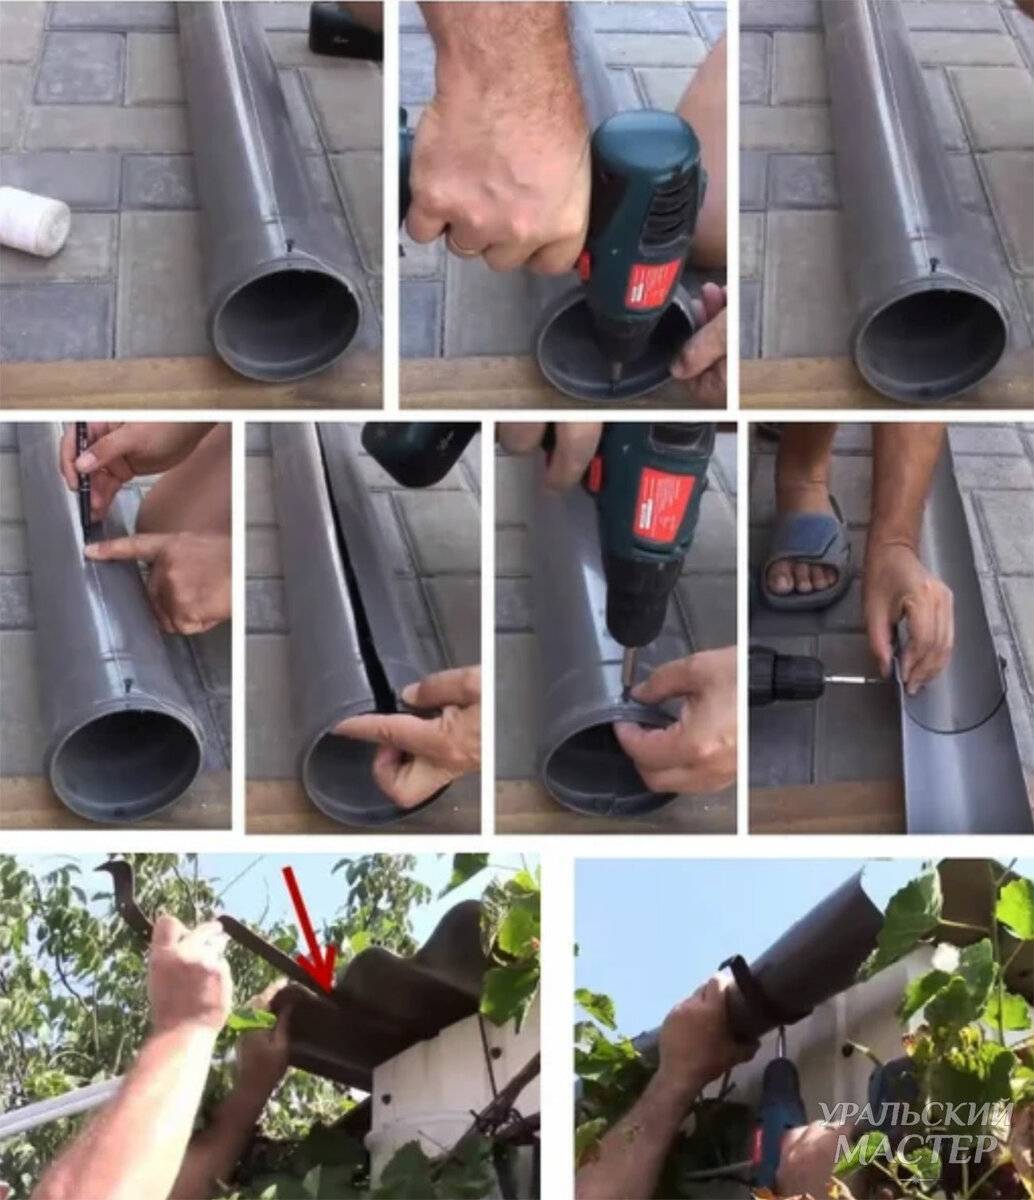 Водосток для крыши своими руками: как организовать слив, варианты материалов, необходимые инструменты